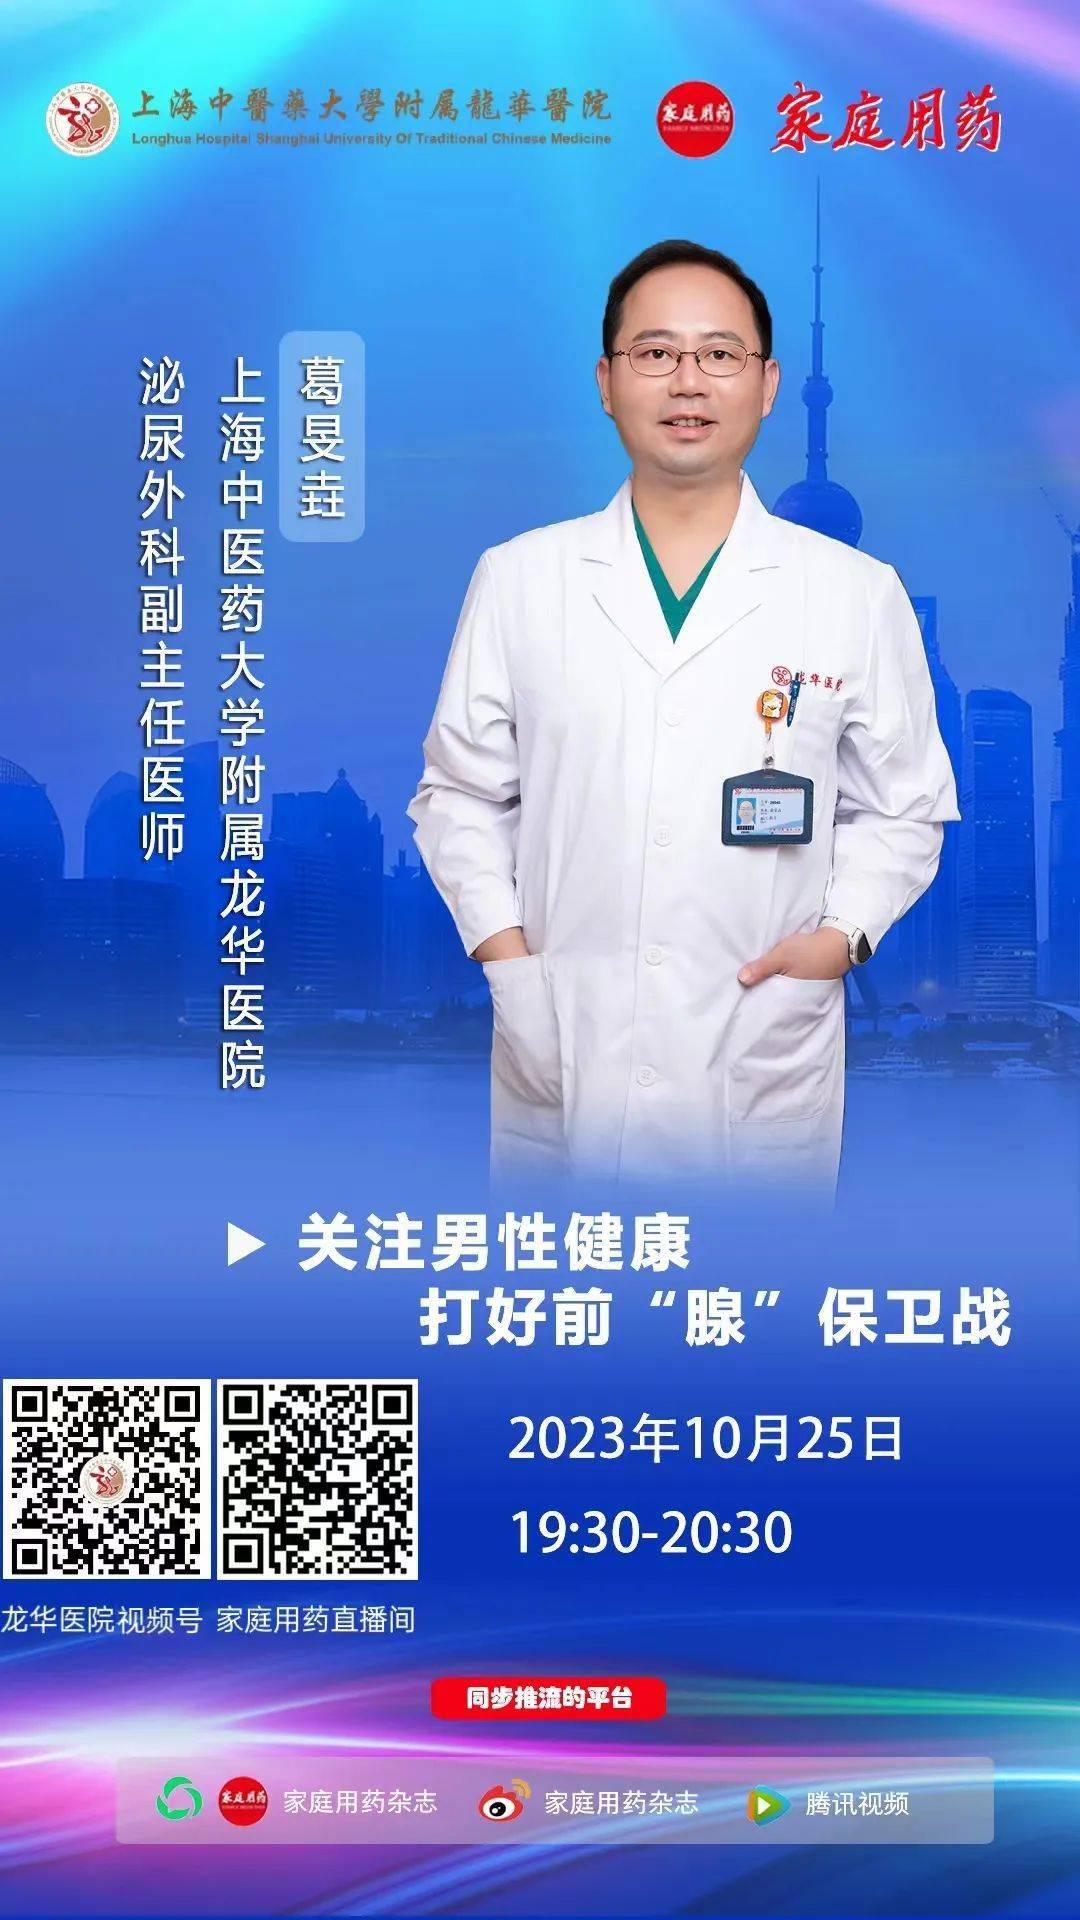 30~20:30,《家庭用药》杂志邀请上海中医药大学附属龙华医院泌尿外科